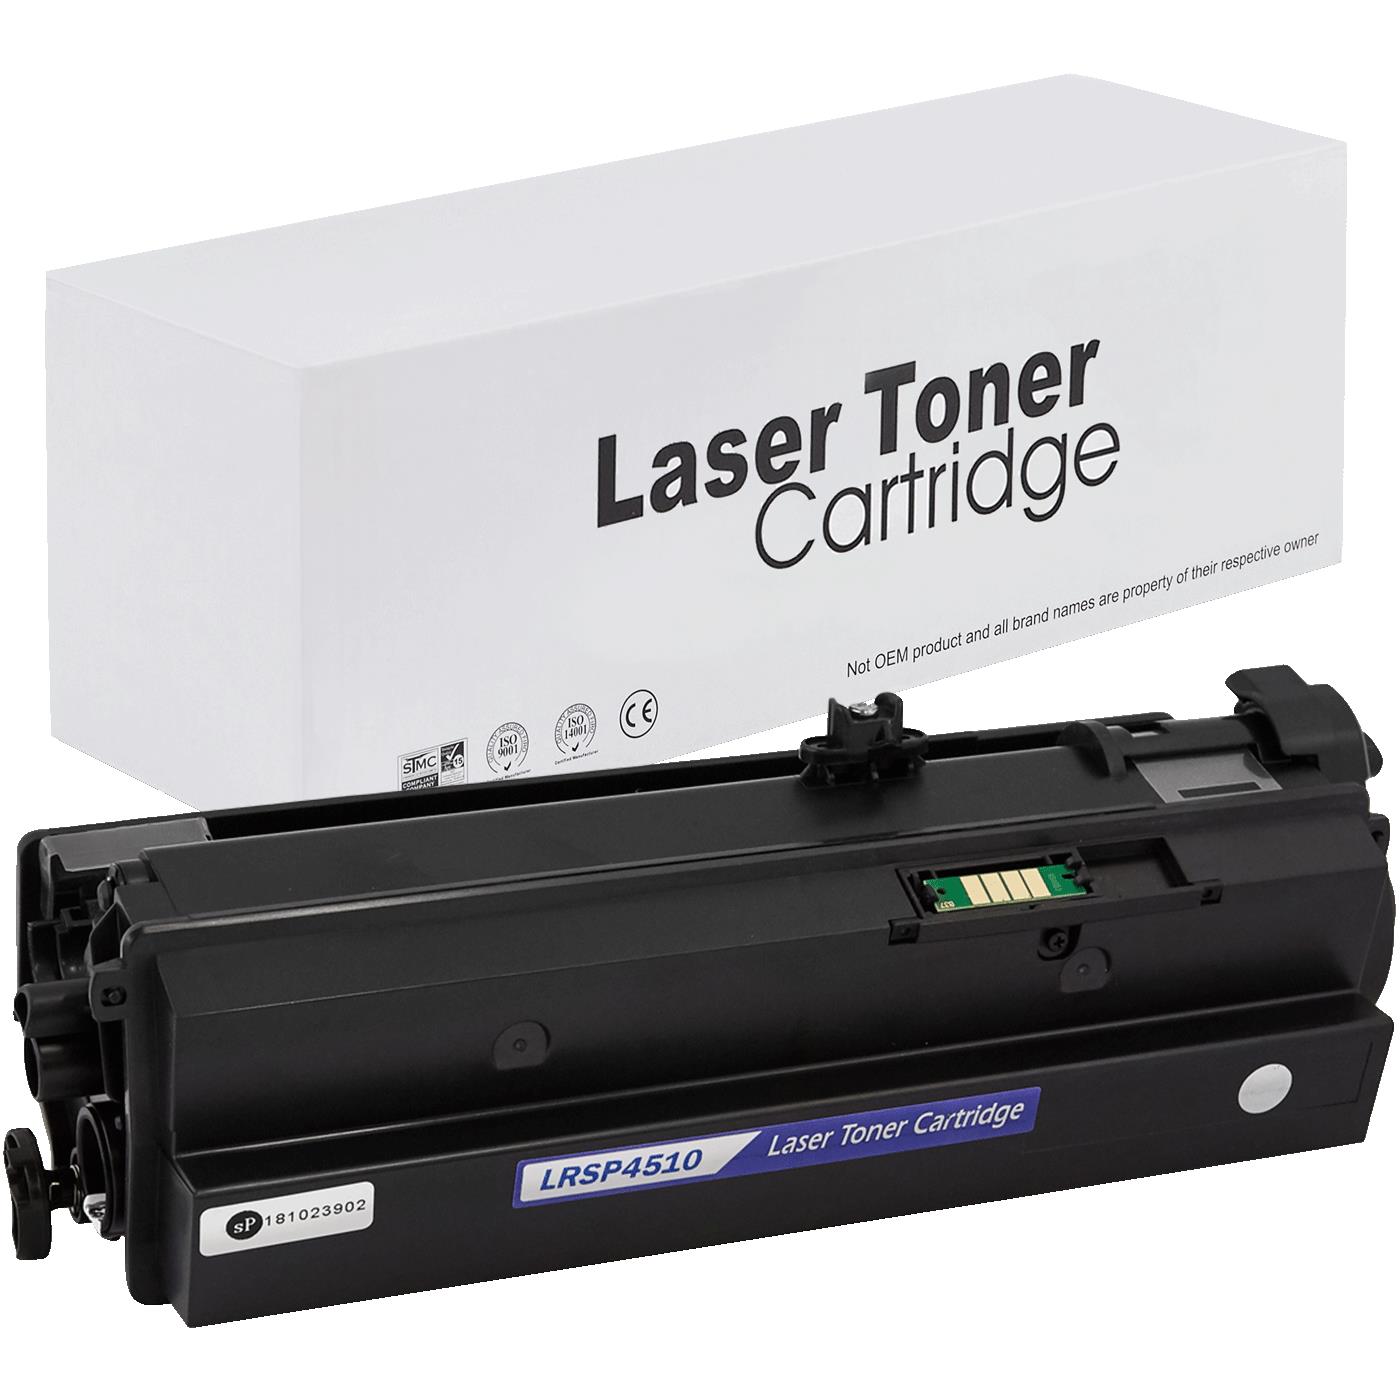 съвместима тонер касета за принтери и печатащи устройства на Ricoh Aficio SP 3600 dn Toner RI-3600 | 407340. Ниски цени, прецизно изпълнение, високо качество.